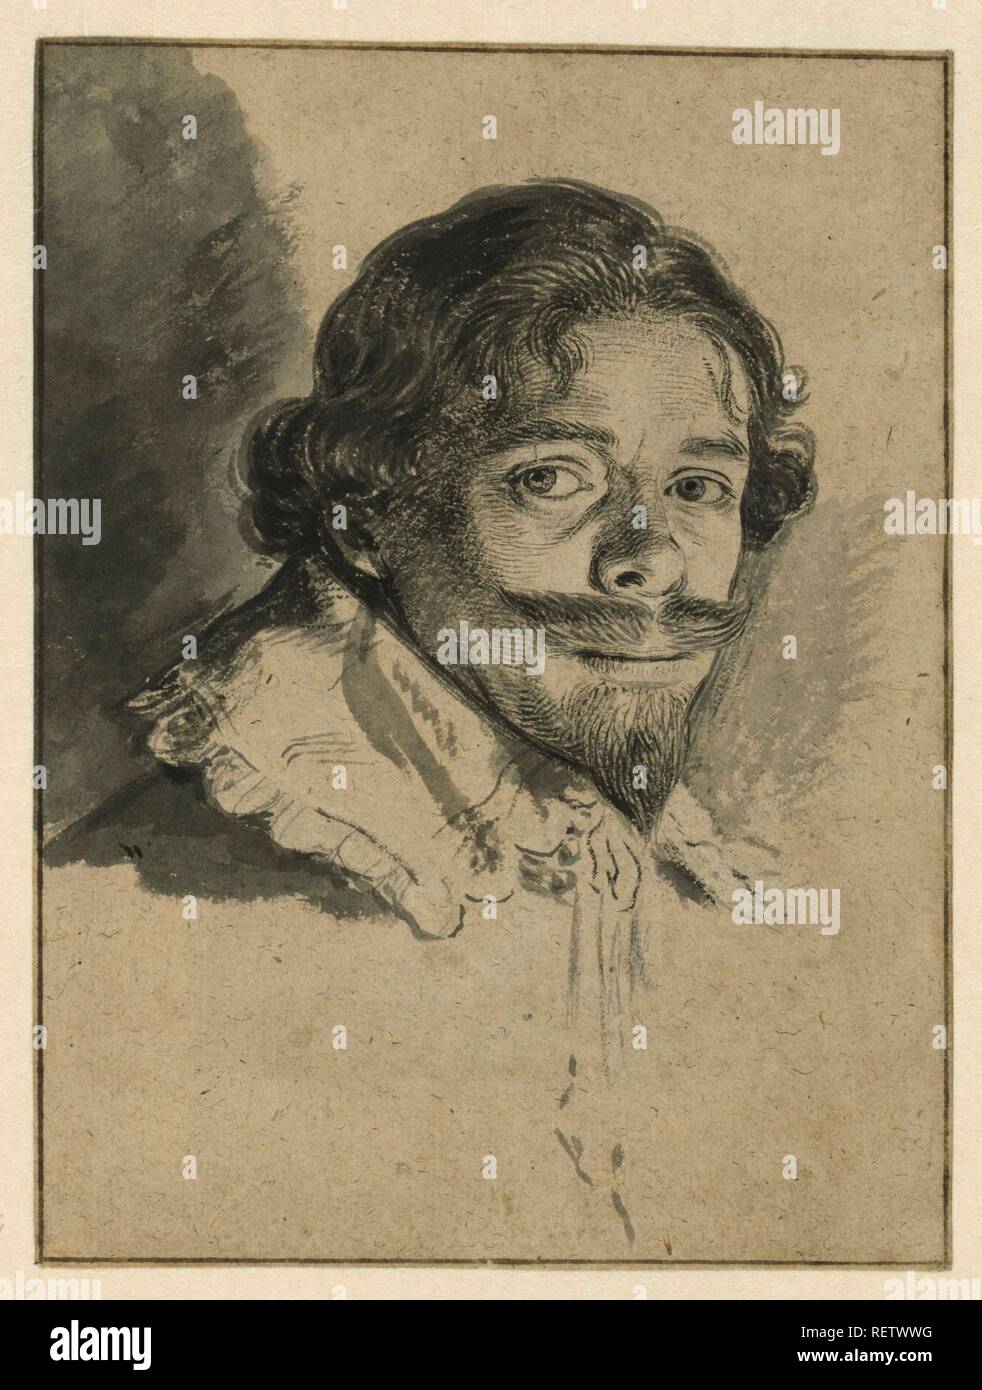 Autoritratto di David Bailly. Relatore: David Bailly. Dating: 1626. Misurazioni: h 164 mm × W 122 mm. Museo: Rijksmuseum Amsterdam. Foto Stock